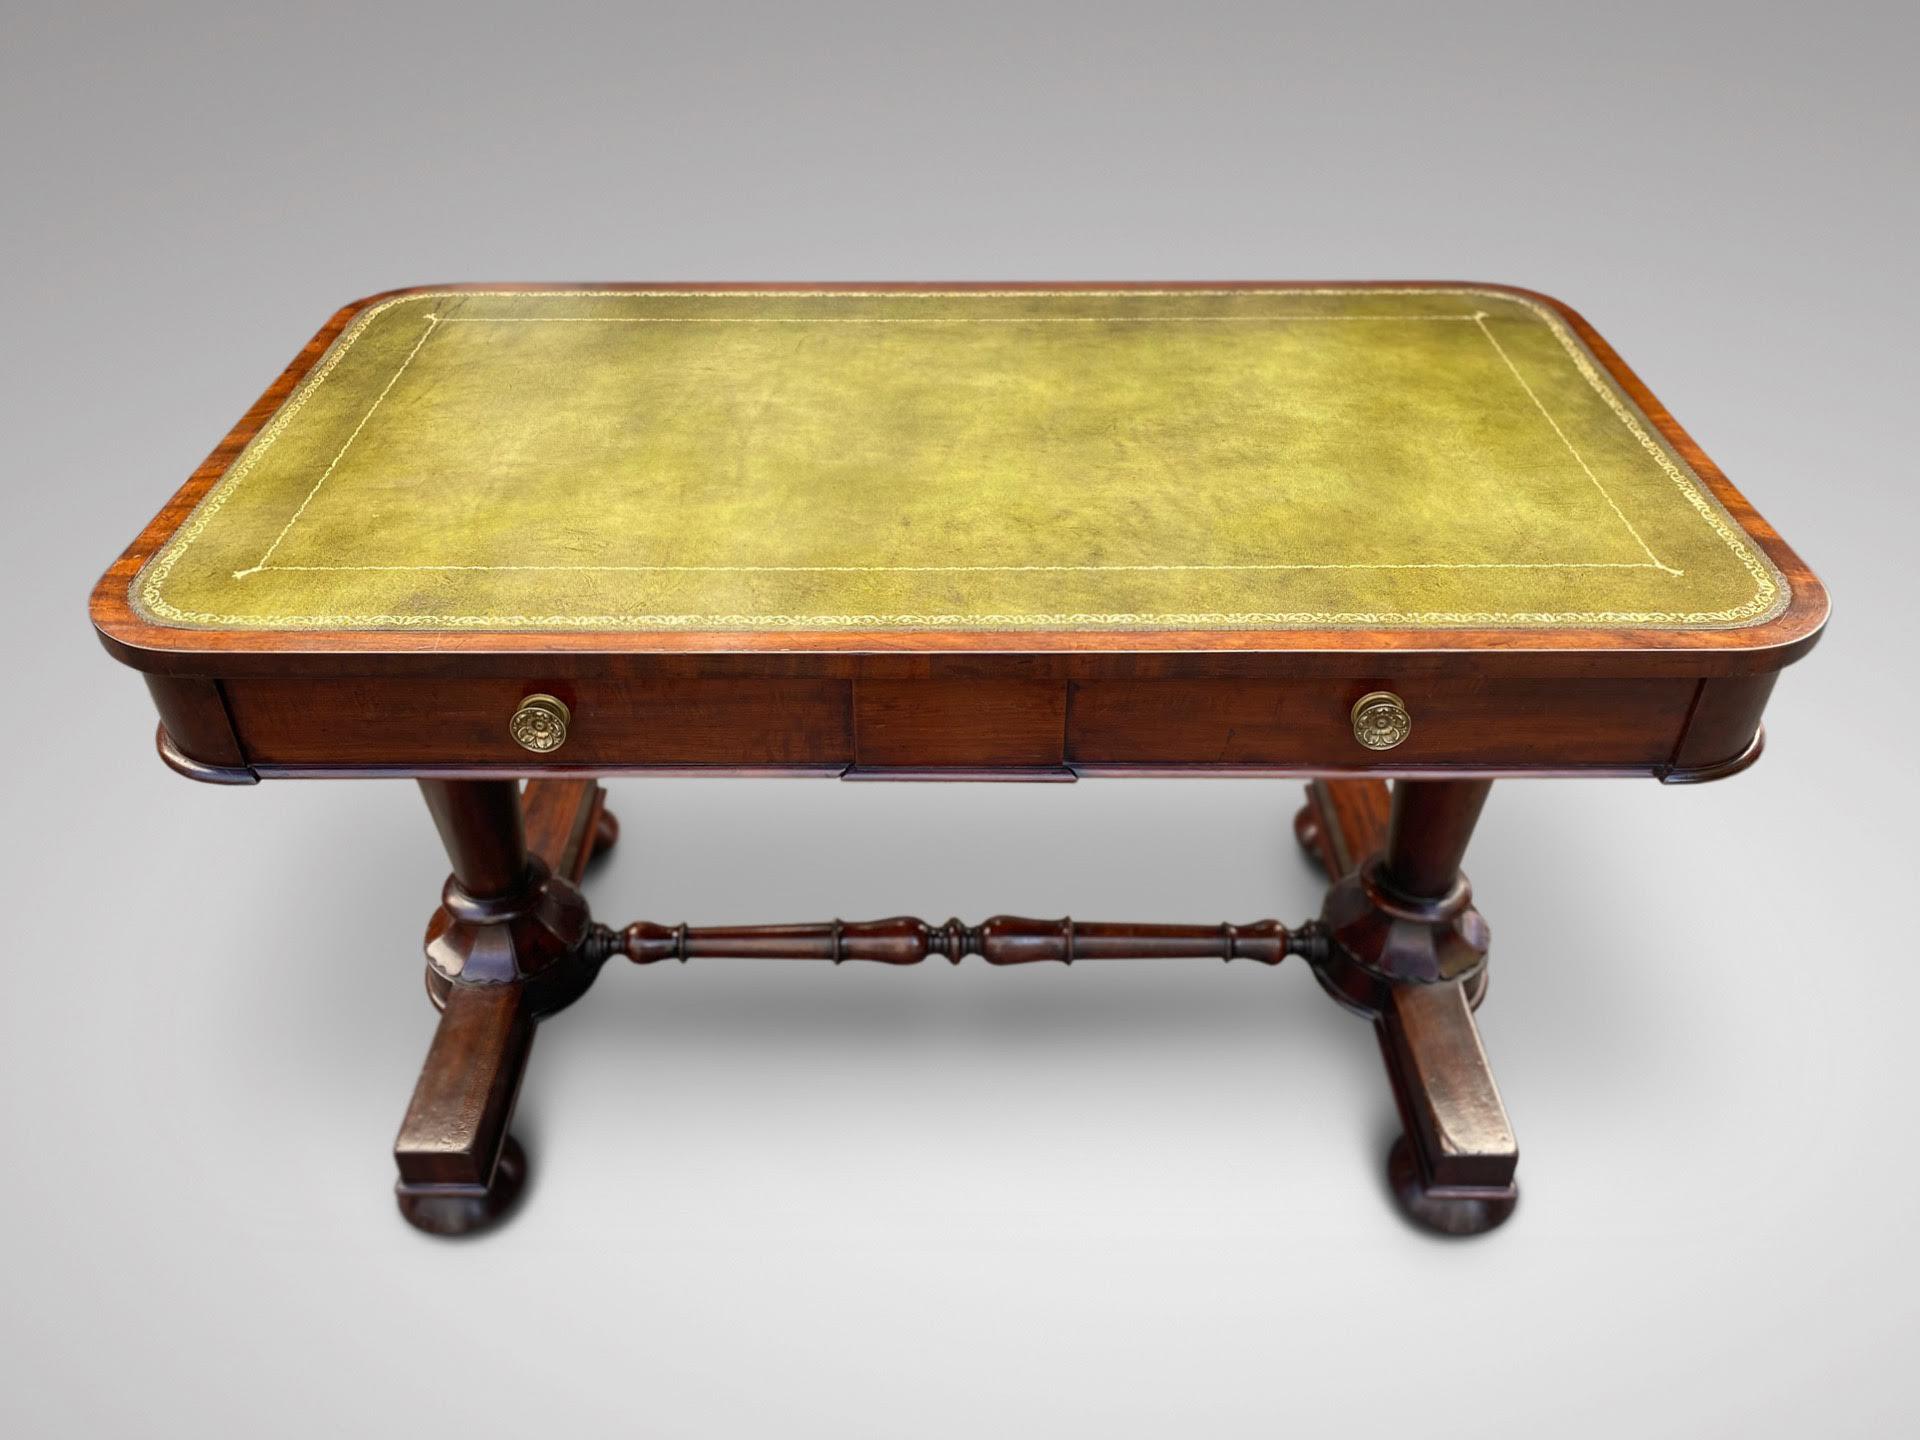 Table à écrire de bibliothèque en acajou, d'époque William IV, du 19e siècle. Le plateau rectangulaire en cuir vert estampé, surmonté d'une frise à moulures géométriques au centre, comprend deux tiroirs à poignées circulaires en laiton, le tout